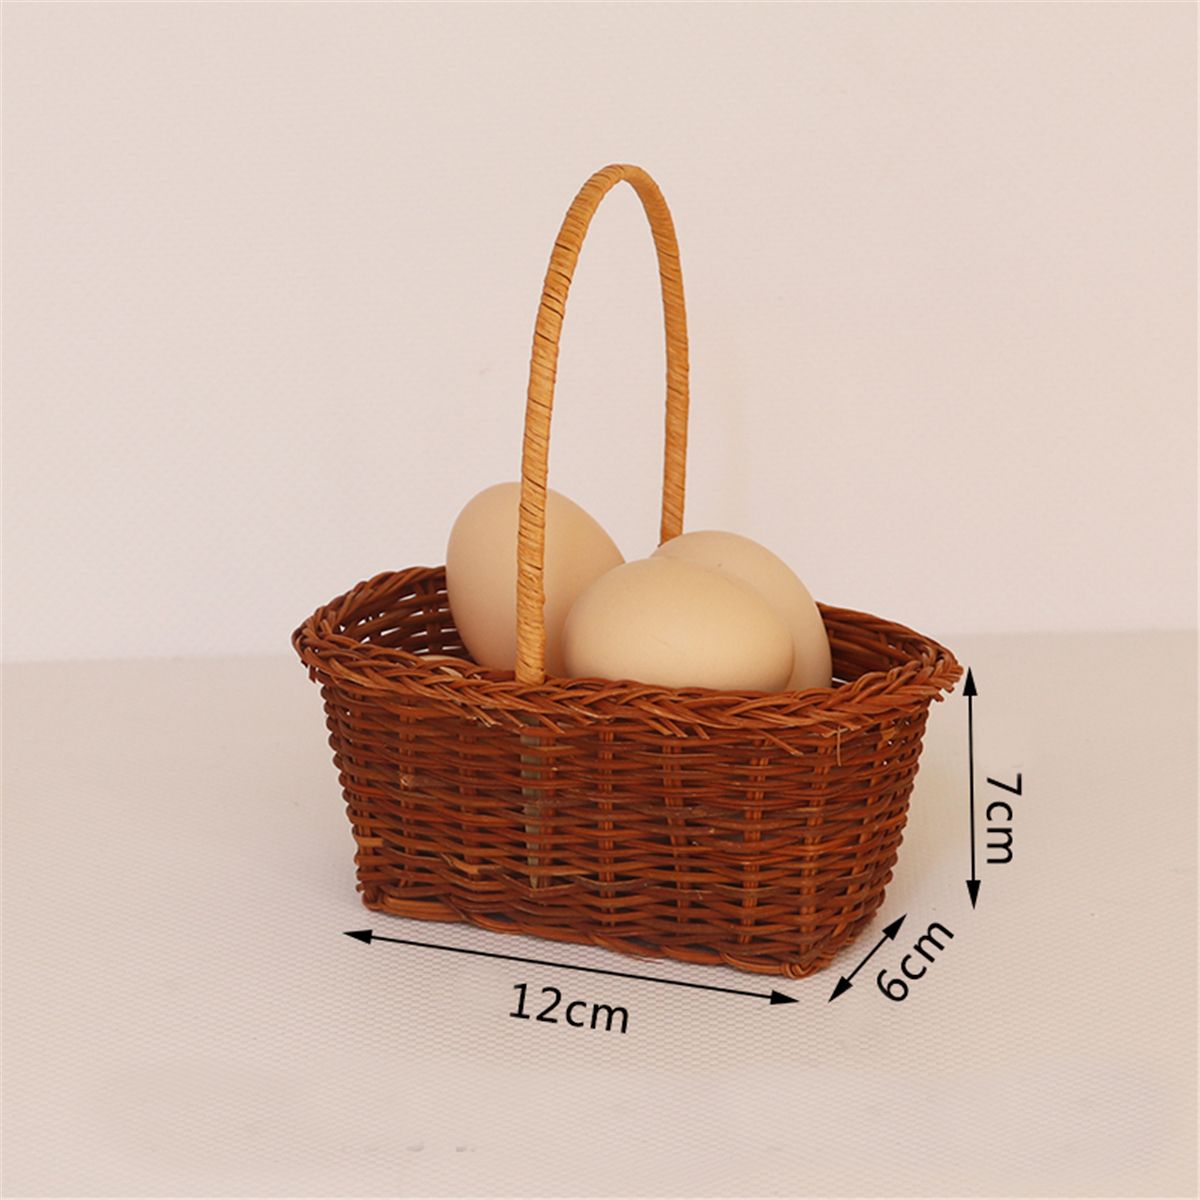 Mini-Handled-Flower-Easter-Gift-Hamper-Vintage-Wedding-Storage-Baskets-1459577